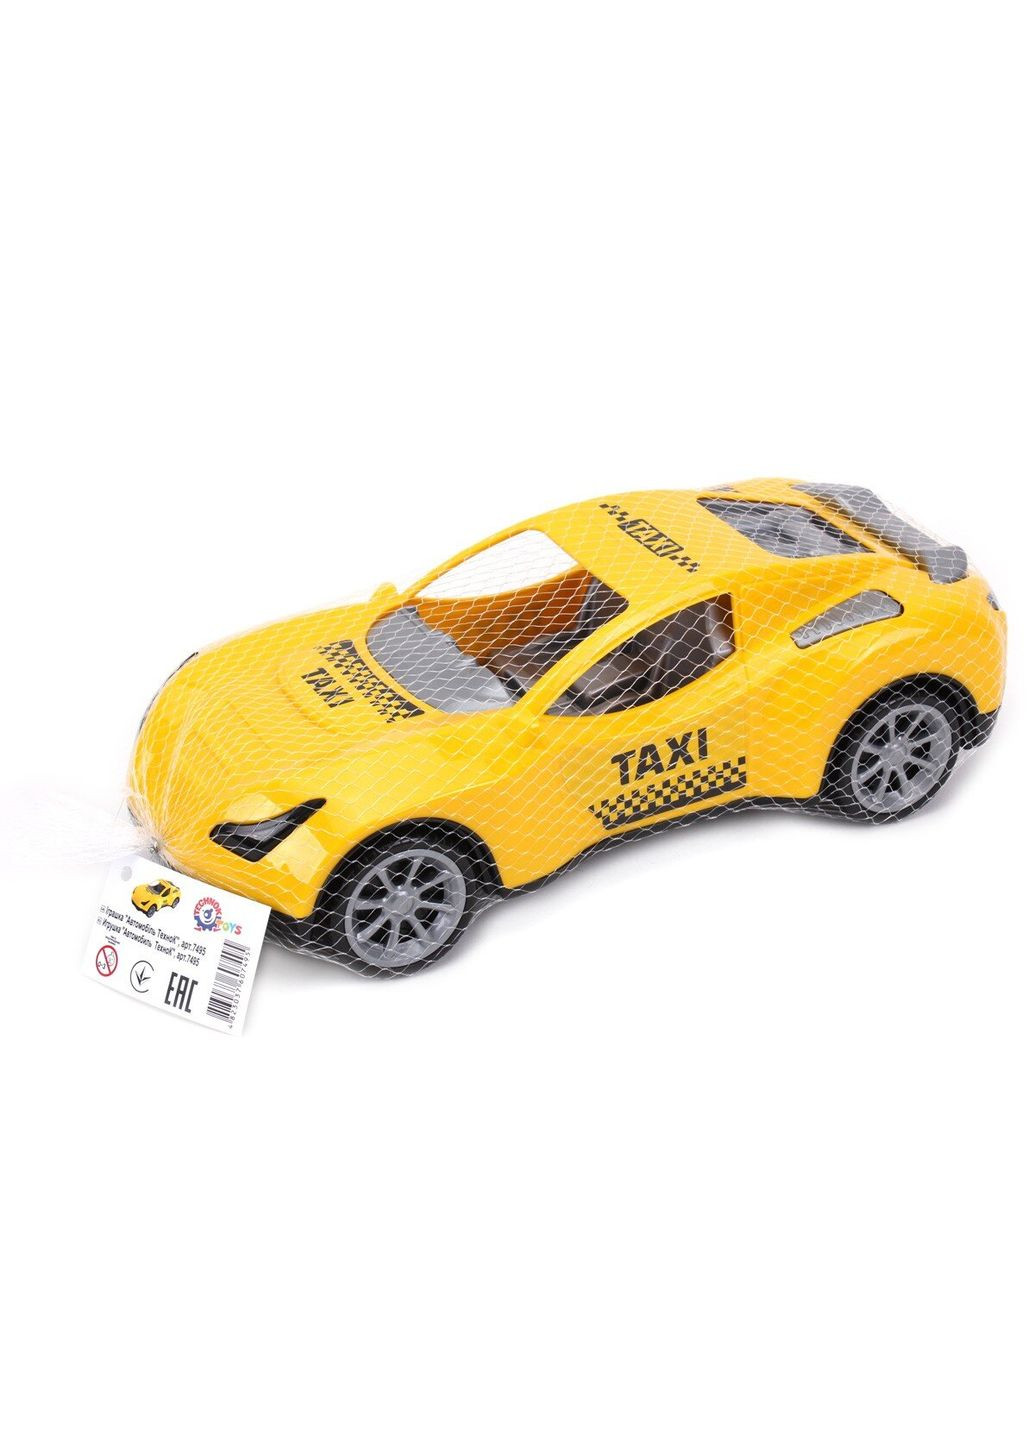 Іграшка Технок «Автомобіль » Taxi (7495) ТехноК (293484192)